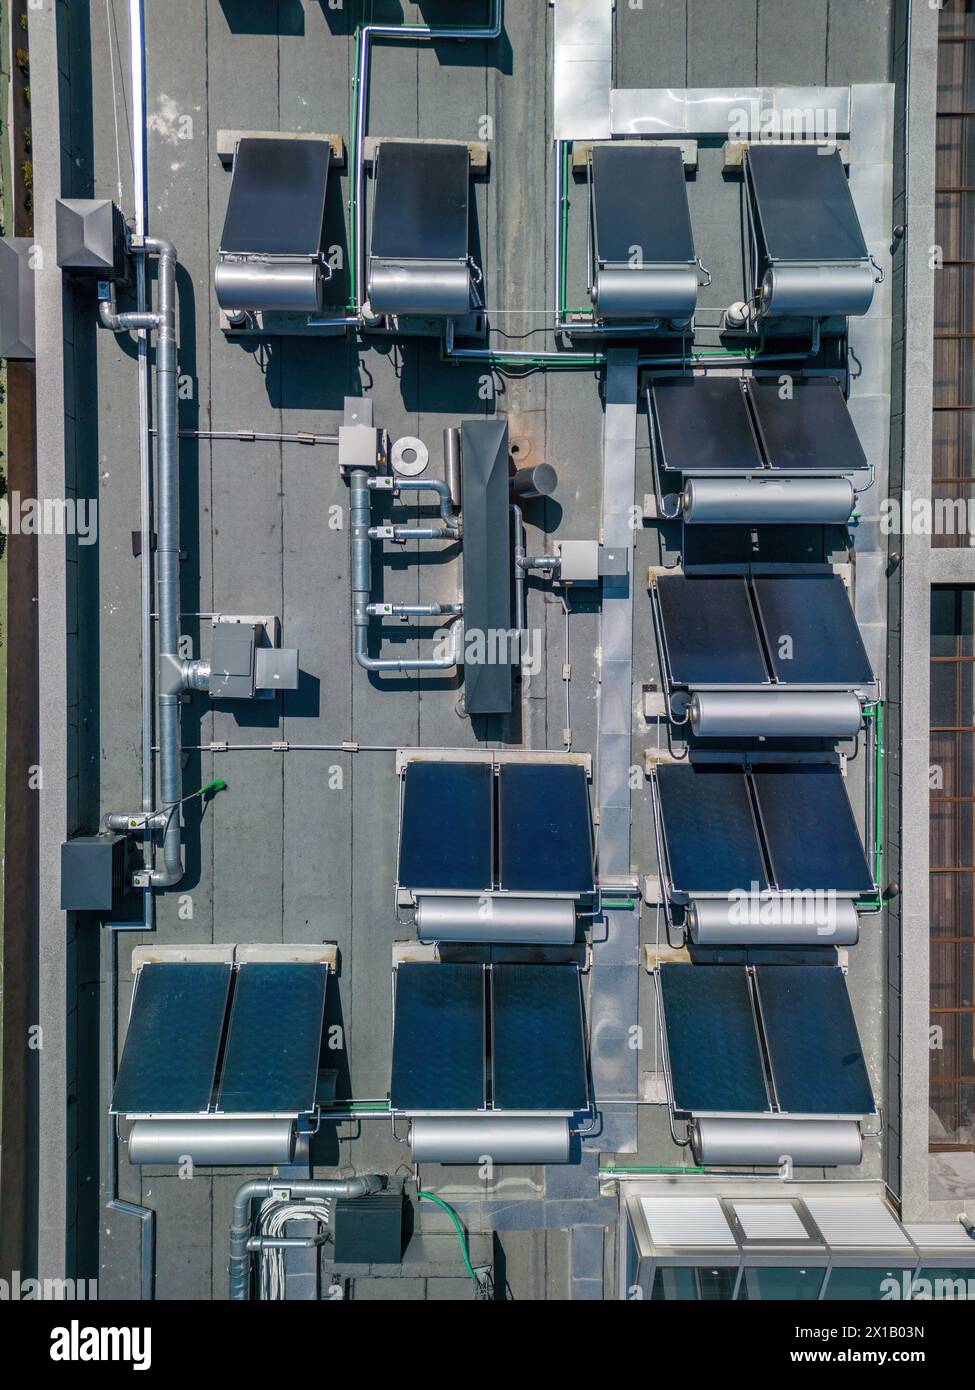 Branche mit geringem CO2-Fußabdruck. Industrielager mit Sonnenkollektoren auf dem Dach. Technologiepark und Fabriken von oben. Stockfoto